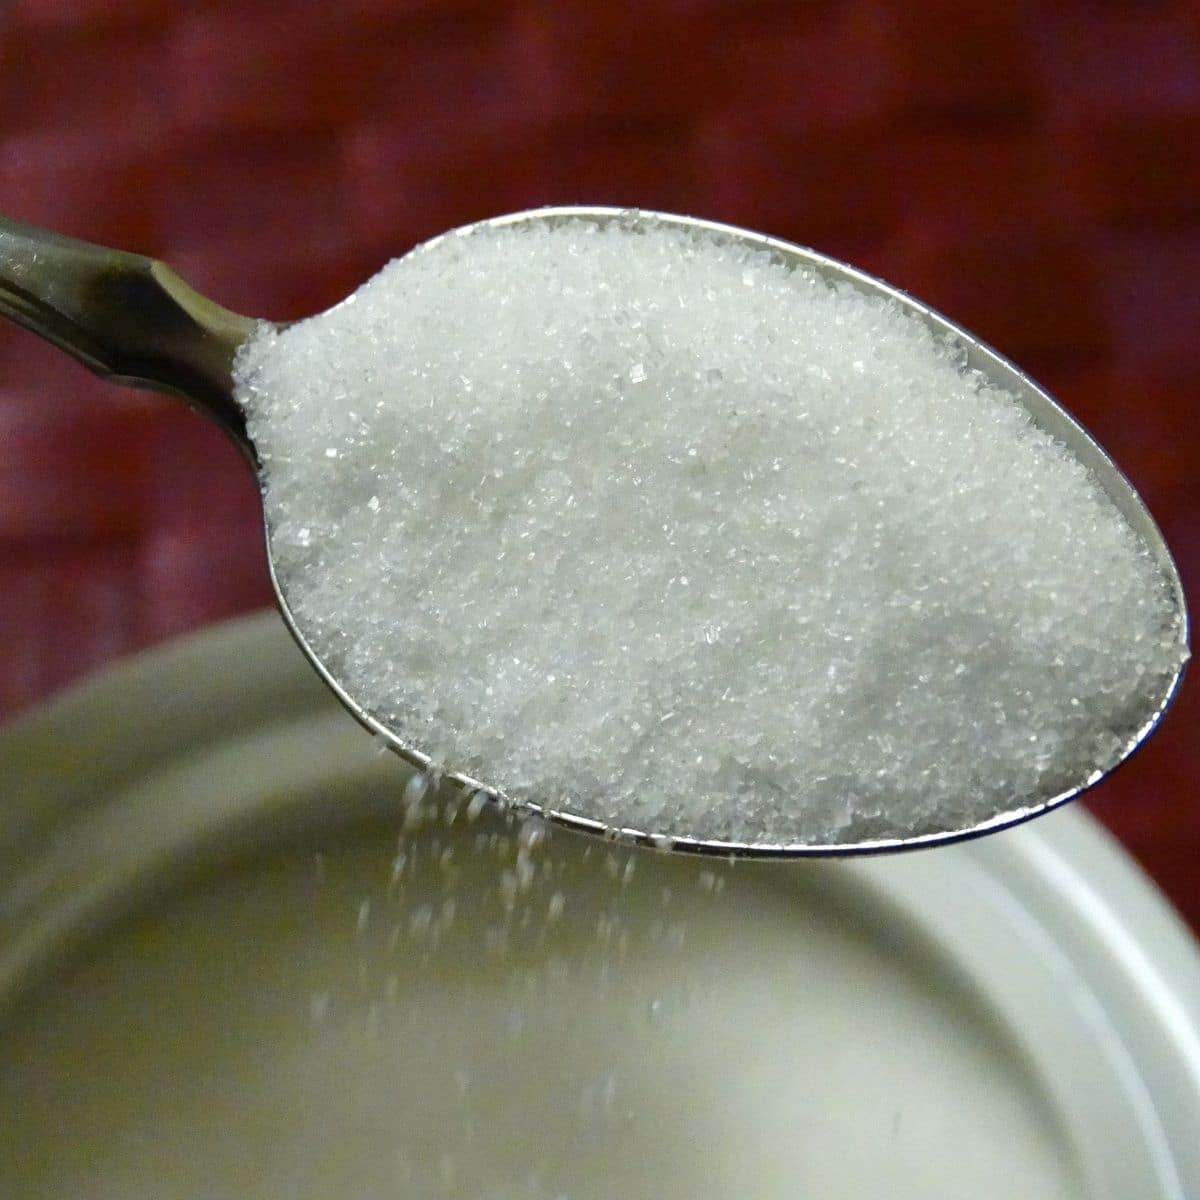 Açúcar sendo retirado do recipiente.